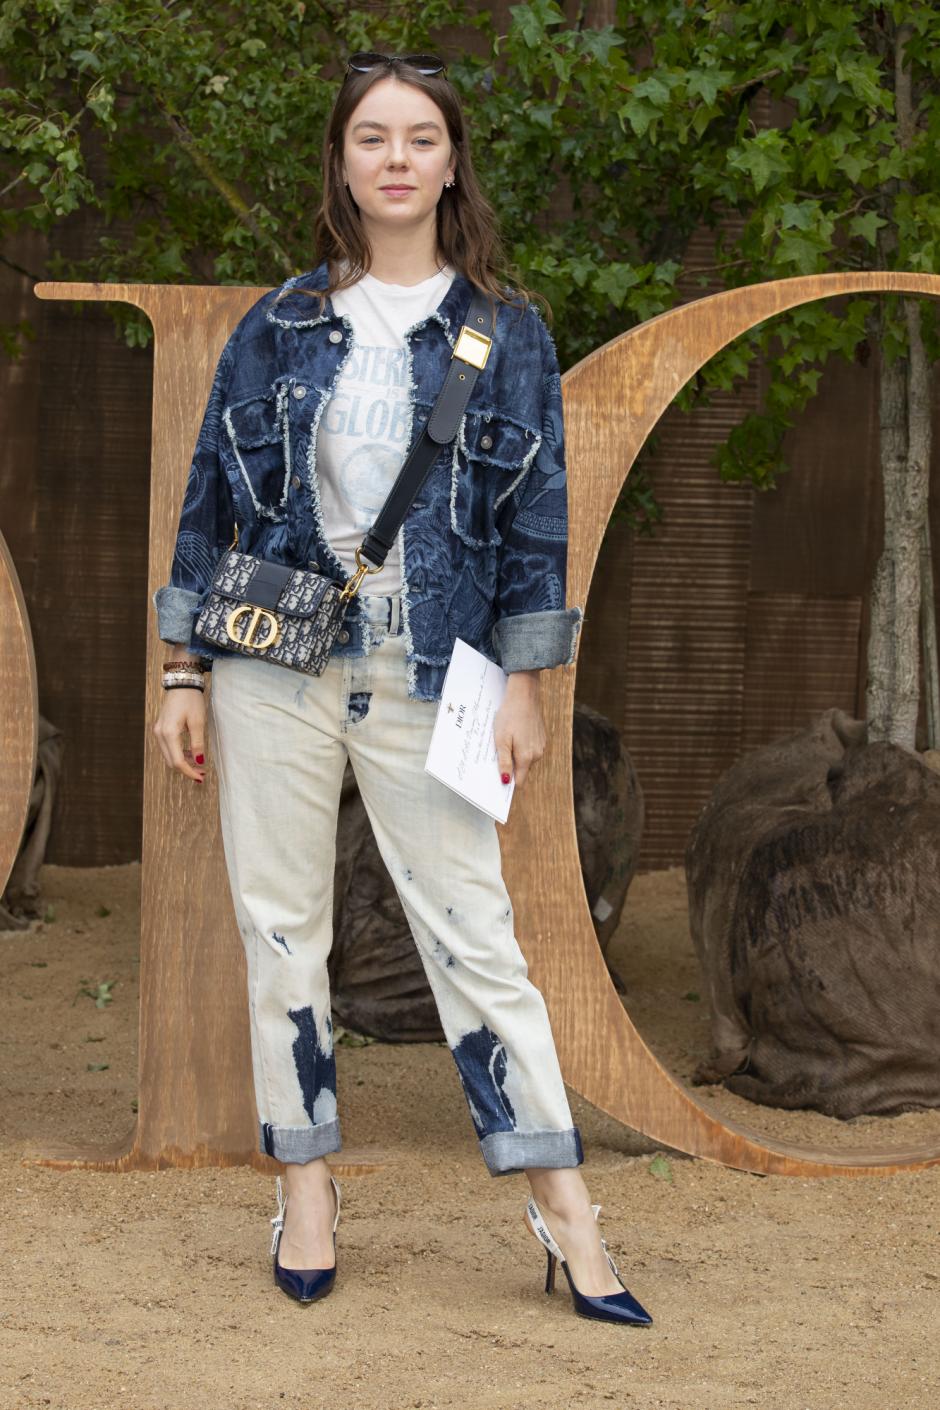 Princess Alexandra de Hanovre at DiorCollection during the fashion week, in Paris, Tuesday, Sept. 24, 2019.
en la foto, bolso de la firma " Dior " / pantalones desteñidos / remangados